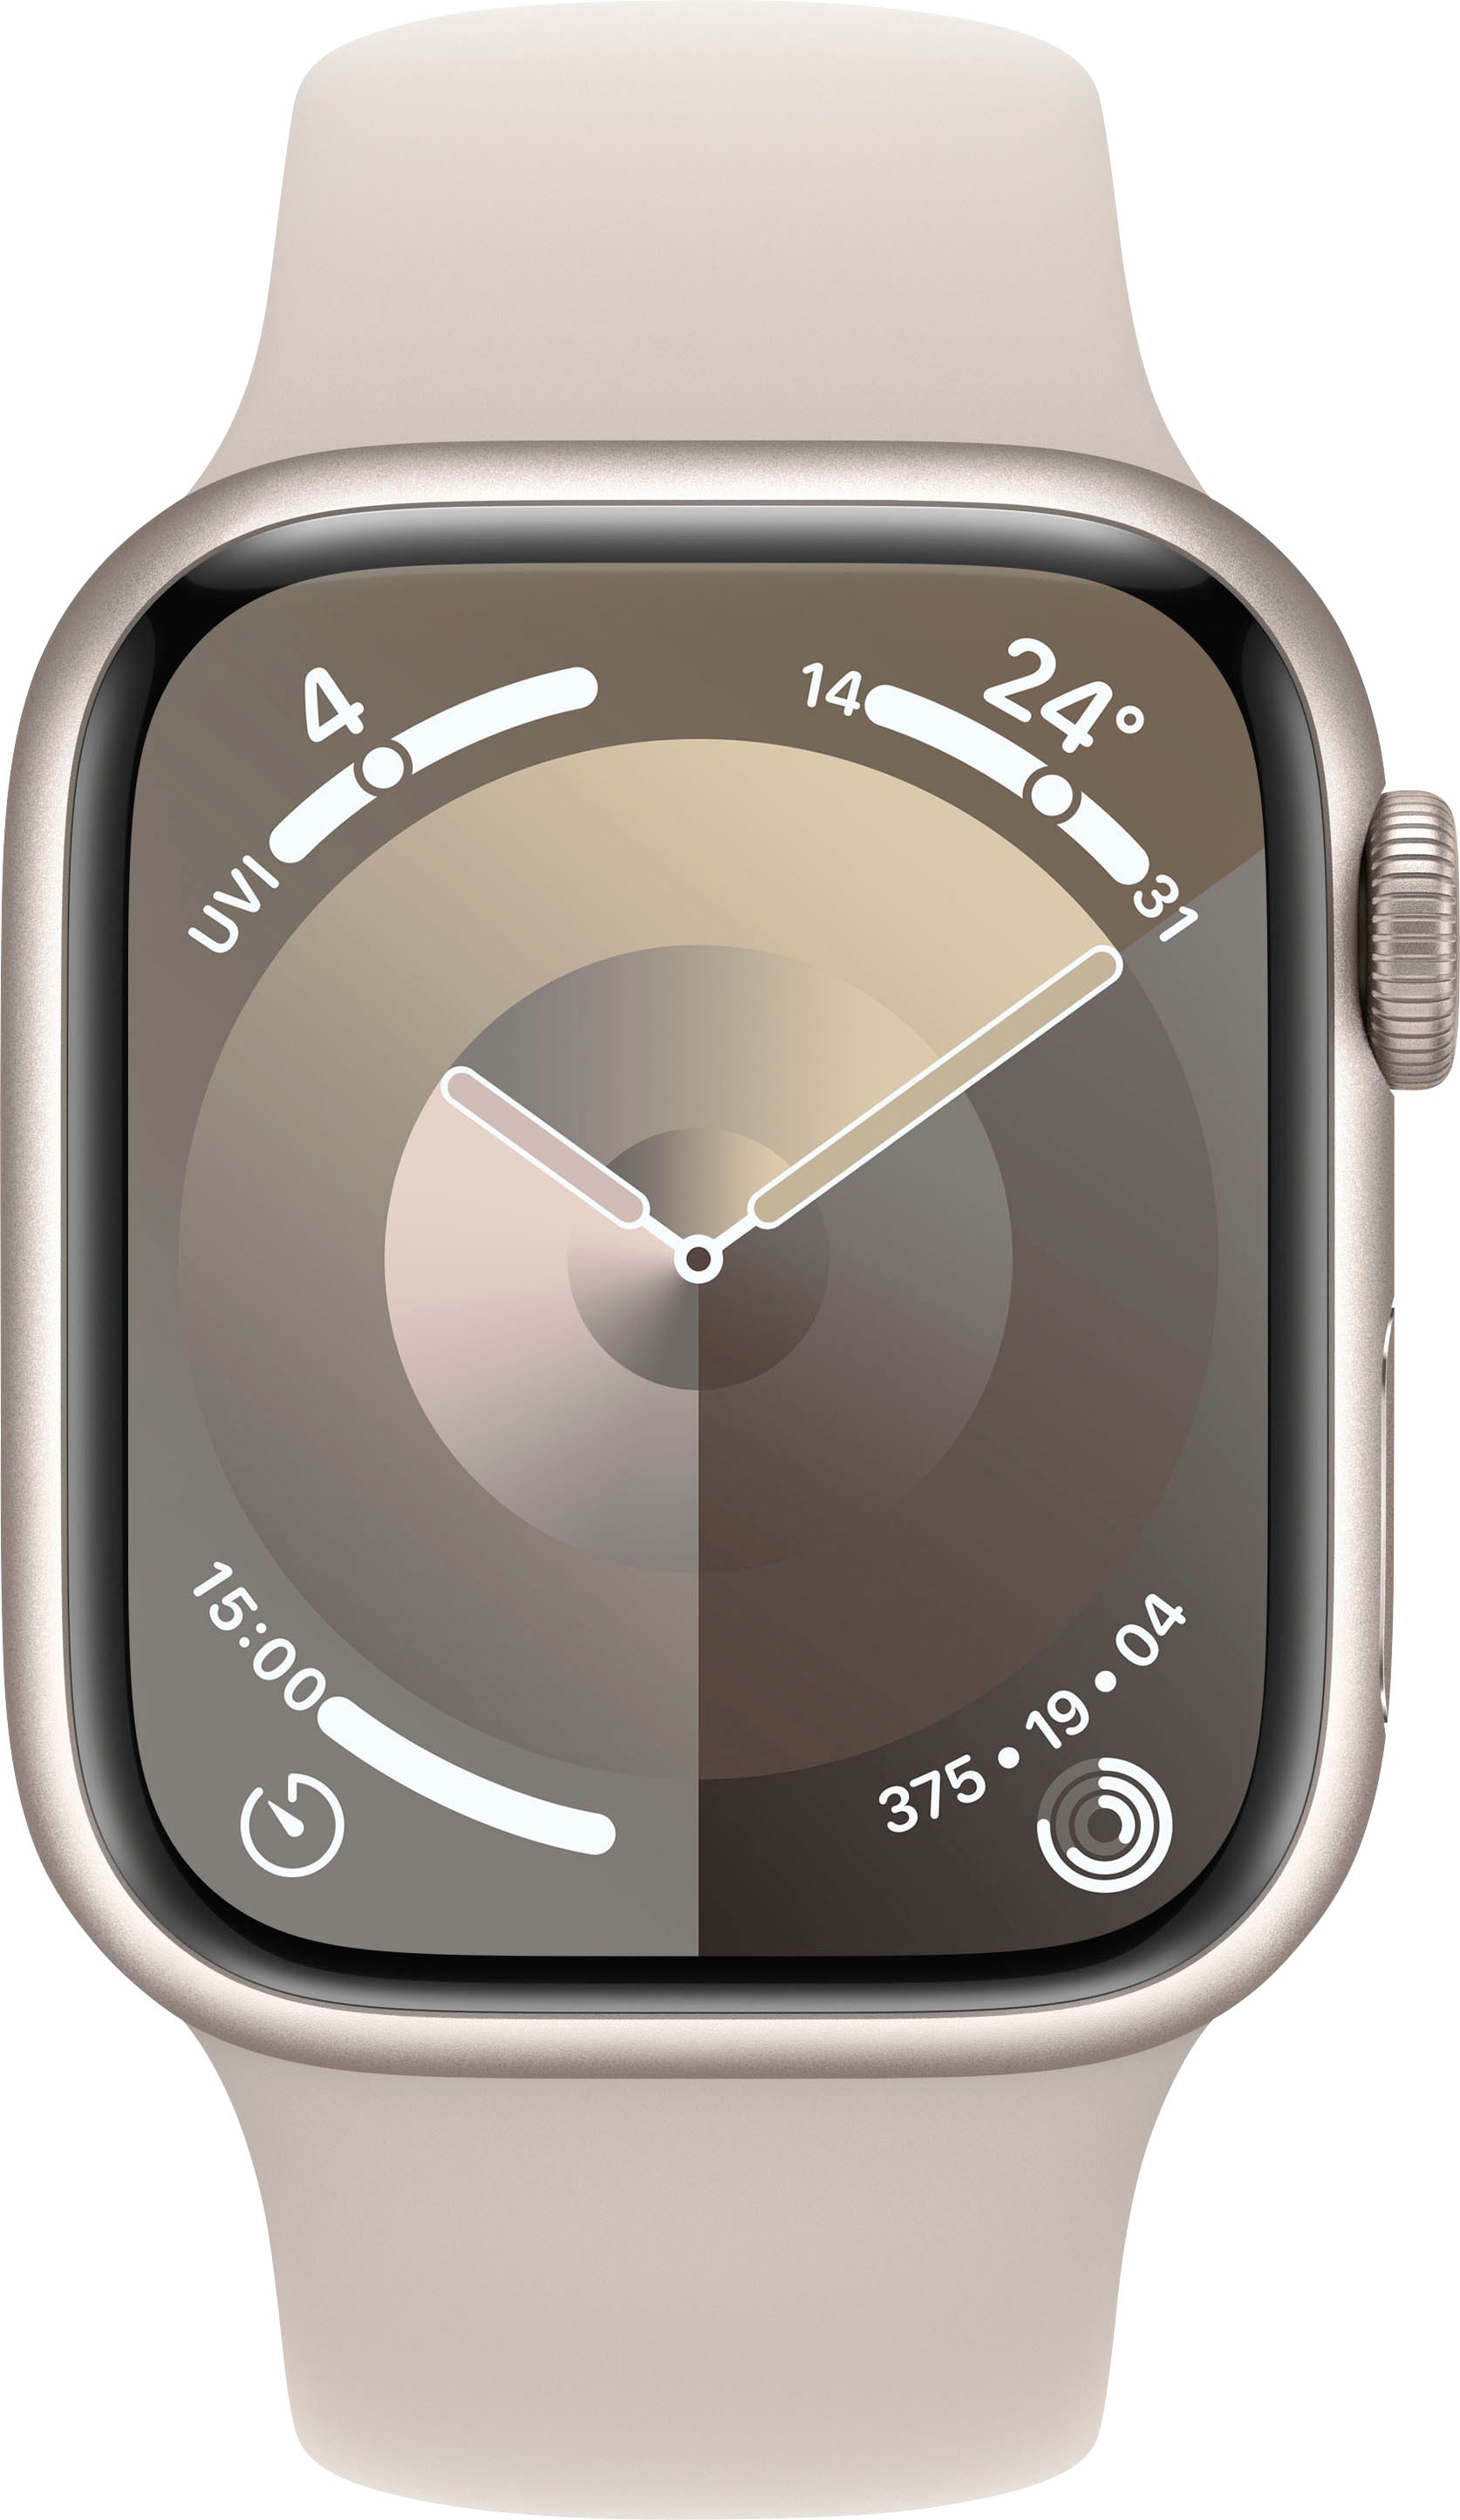 Apple Smartwatch 10 bestellen »Watch im Cellular GPS + (Watch Aluminium«, 41mm Band) OS Sport 9 Online-Shop Series